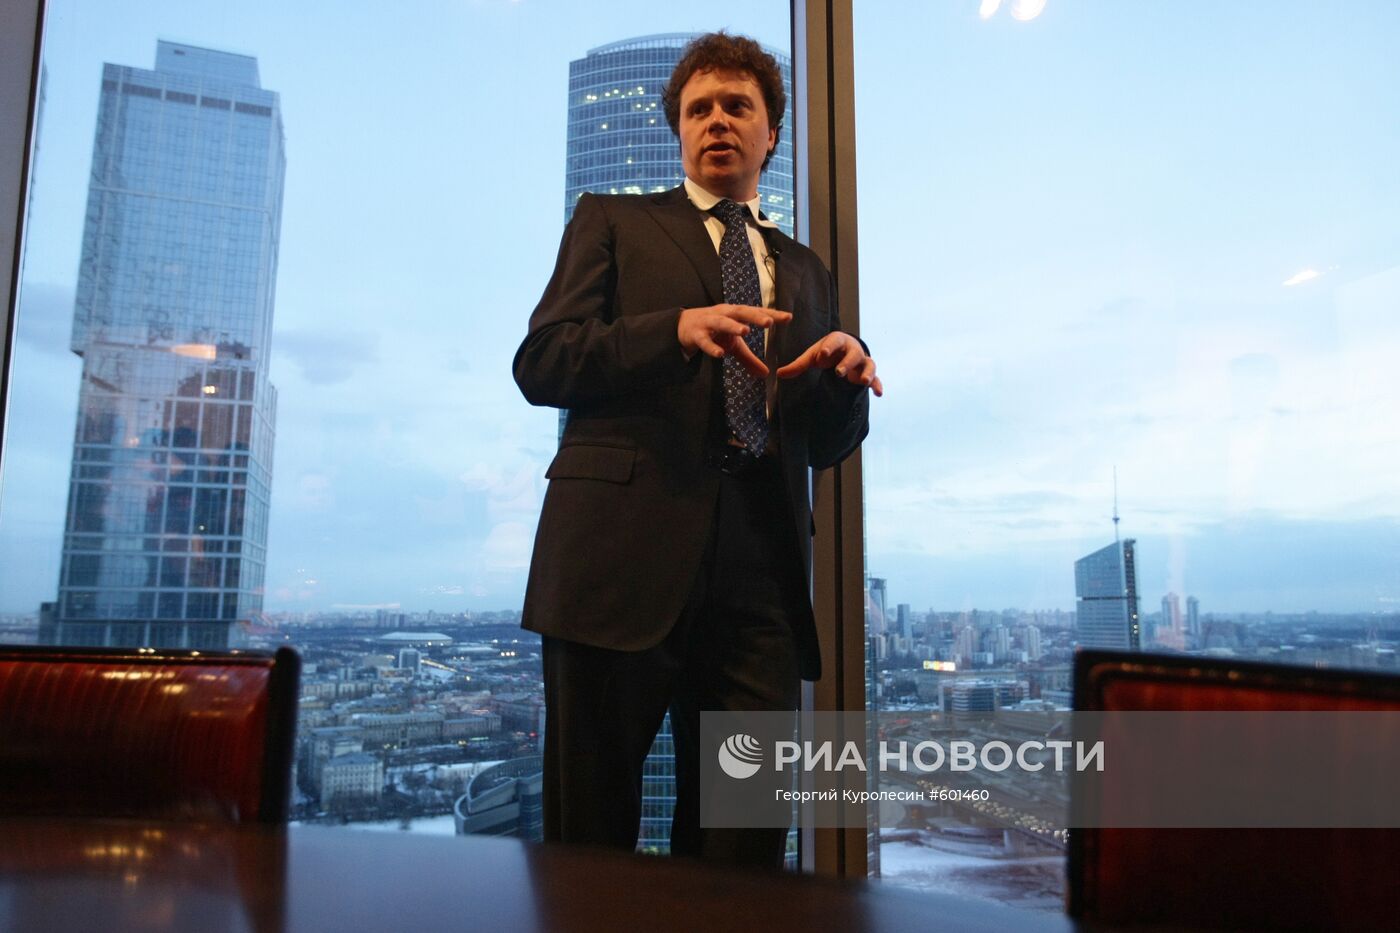 Сергей Полонский водит экскурсию по башне "Федерация"